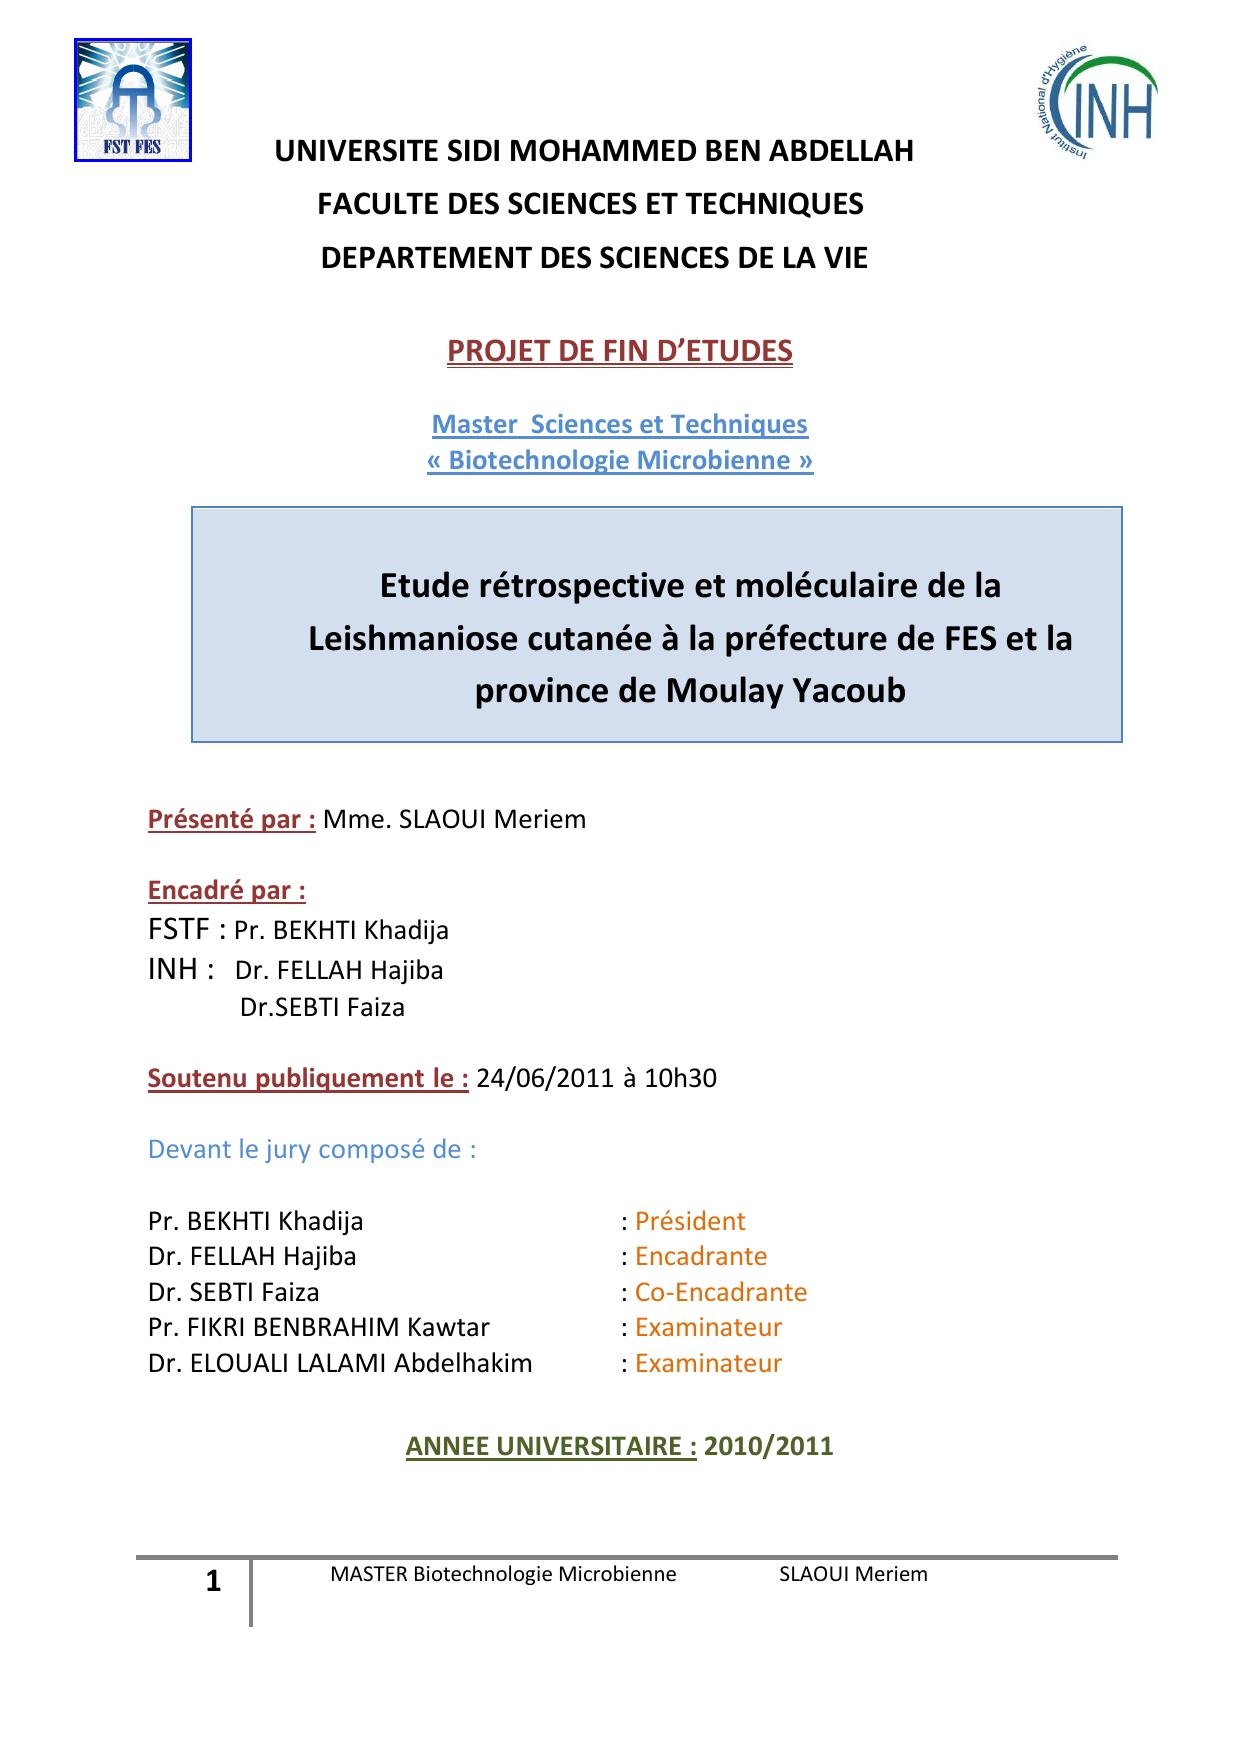 Etude rétrospective et moléculaire de la Leishmaniose cutanée à la préfecture de FES et la province de Moulay Yacoub